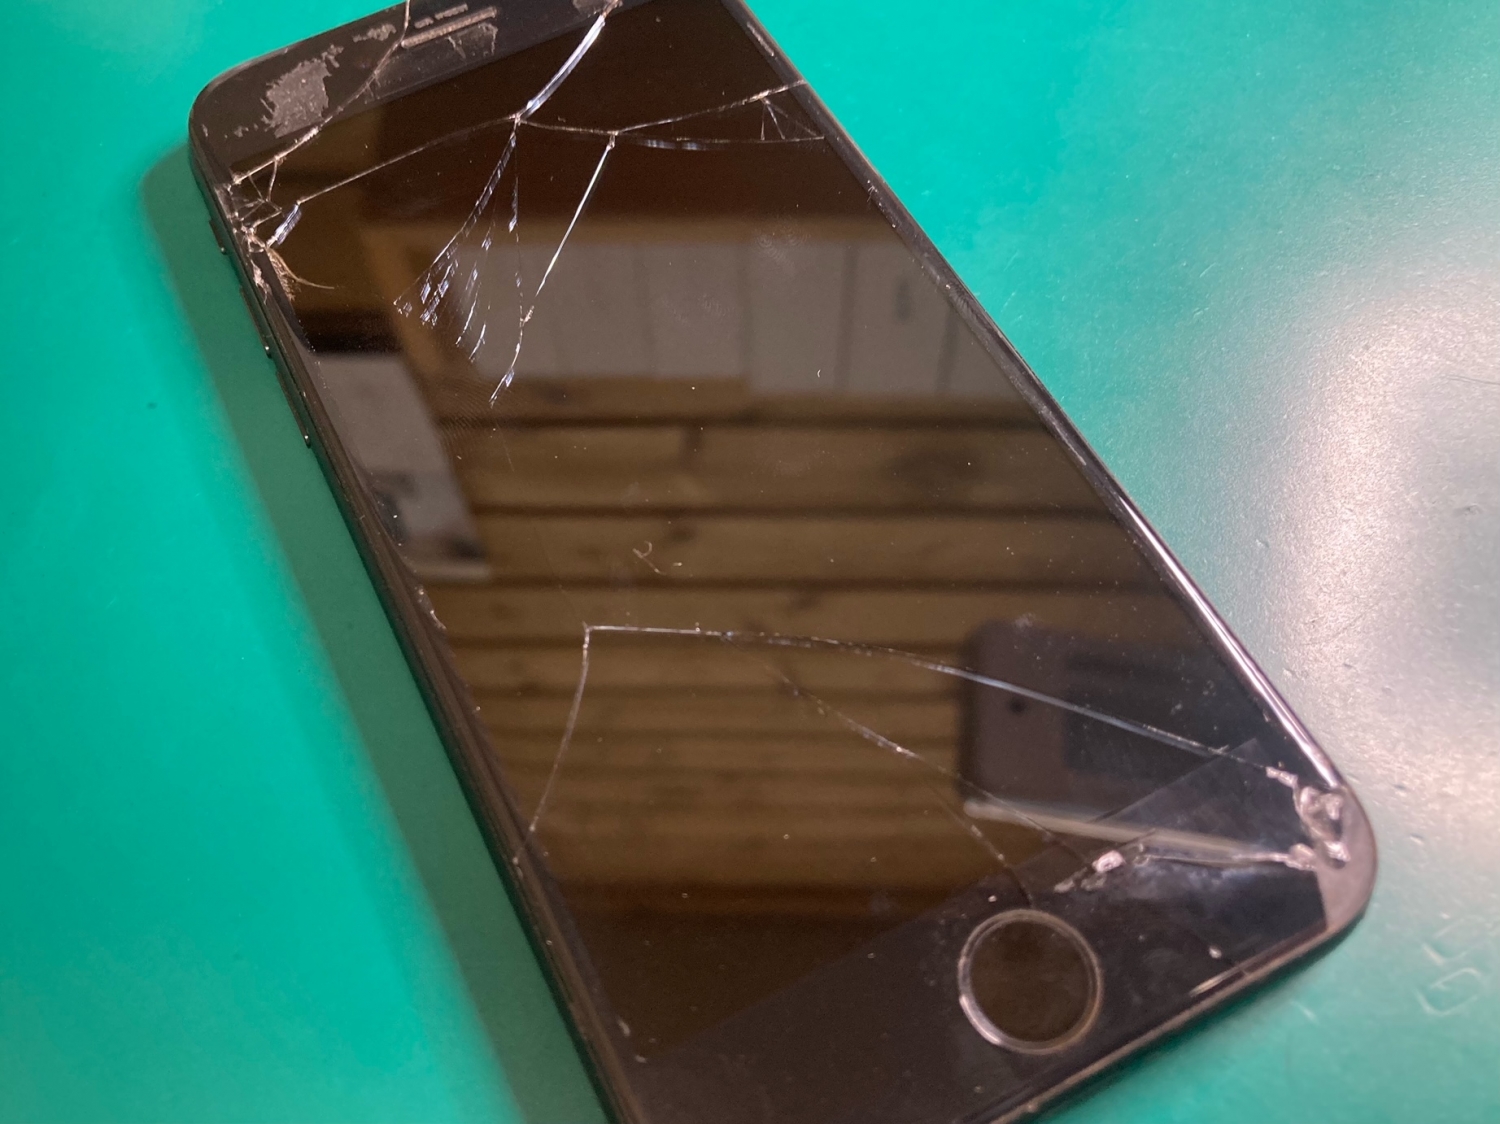 安心安全のためiPhoneガラス割れは放置せず、是非お近くの修理店へご相談ください。